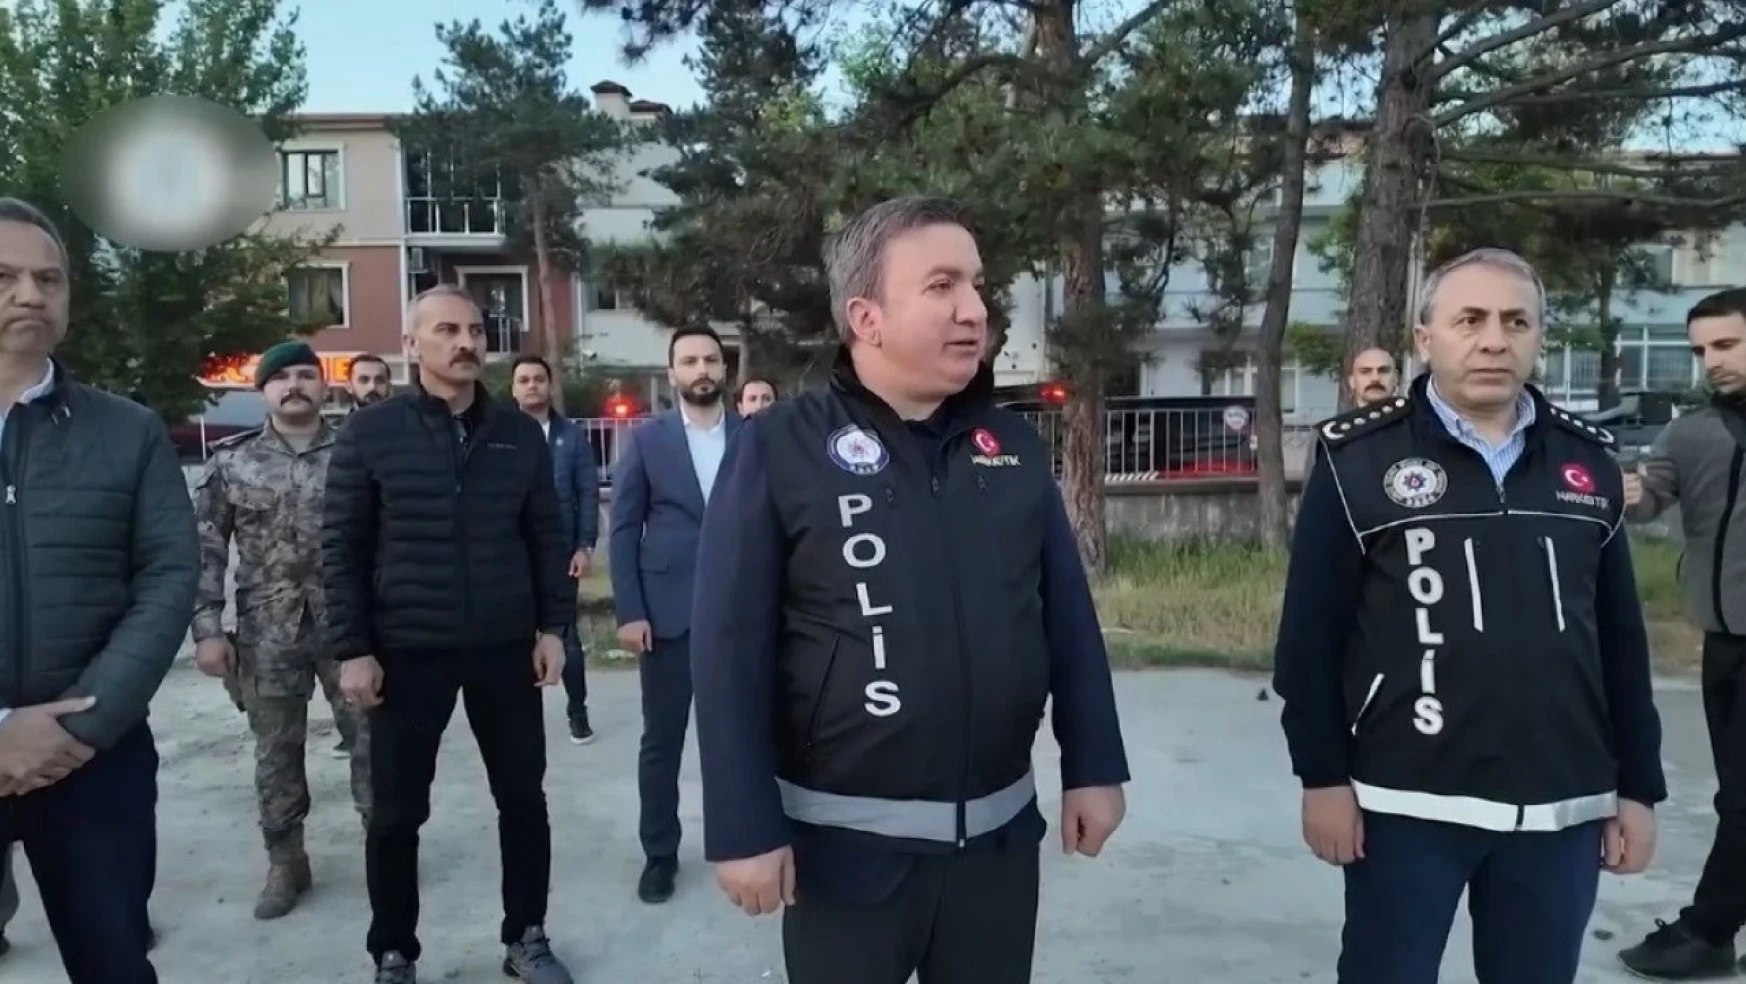 Erzincan'da narkotik polislerinden uyuşturucu tacirlerine büyük darbe: 42 gözaltı